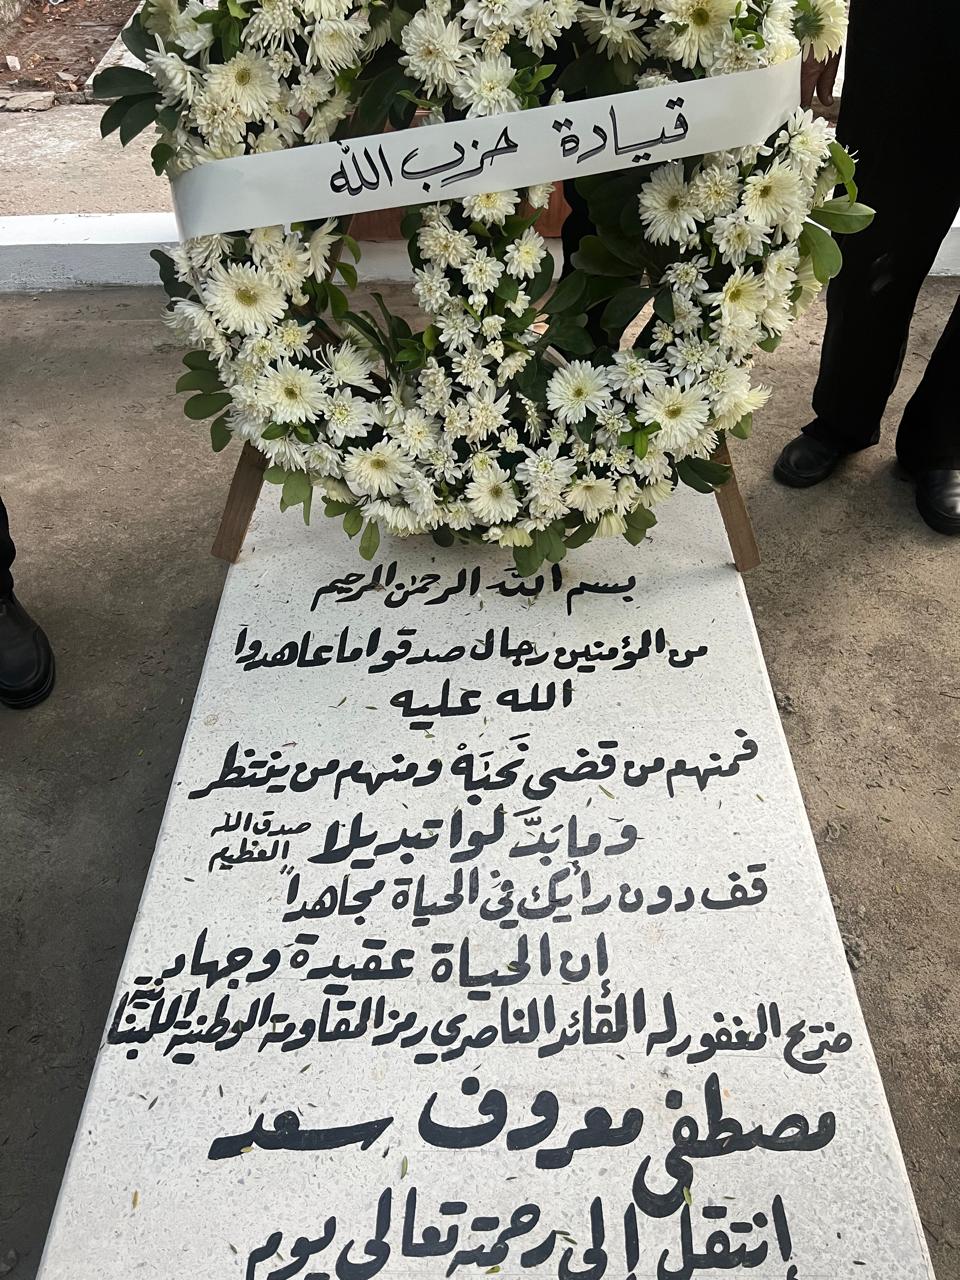 وفد من "الحزب" يزور ضريح النائب مصطفى سعد بالذكرى الـ22 لرحيله